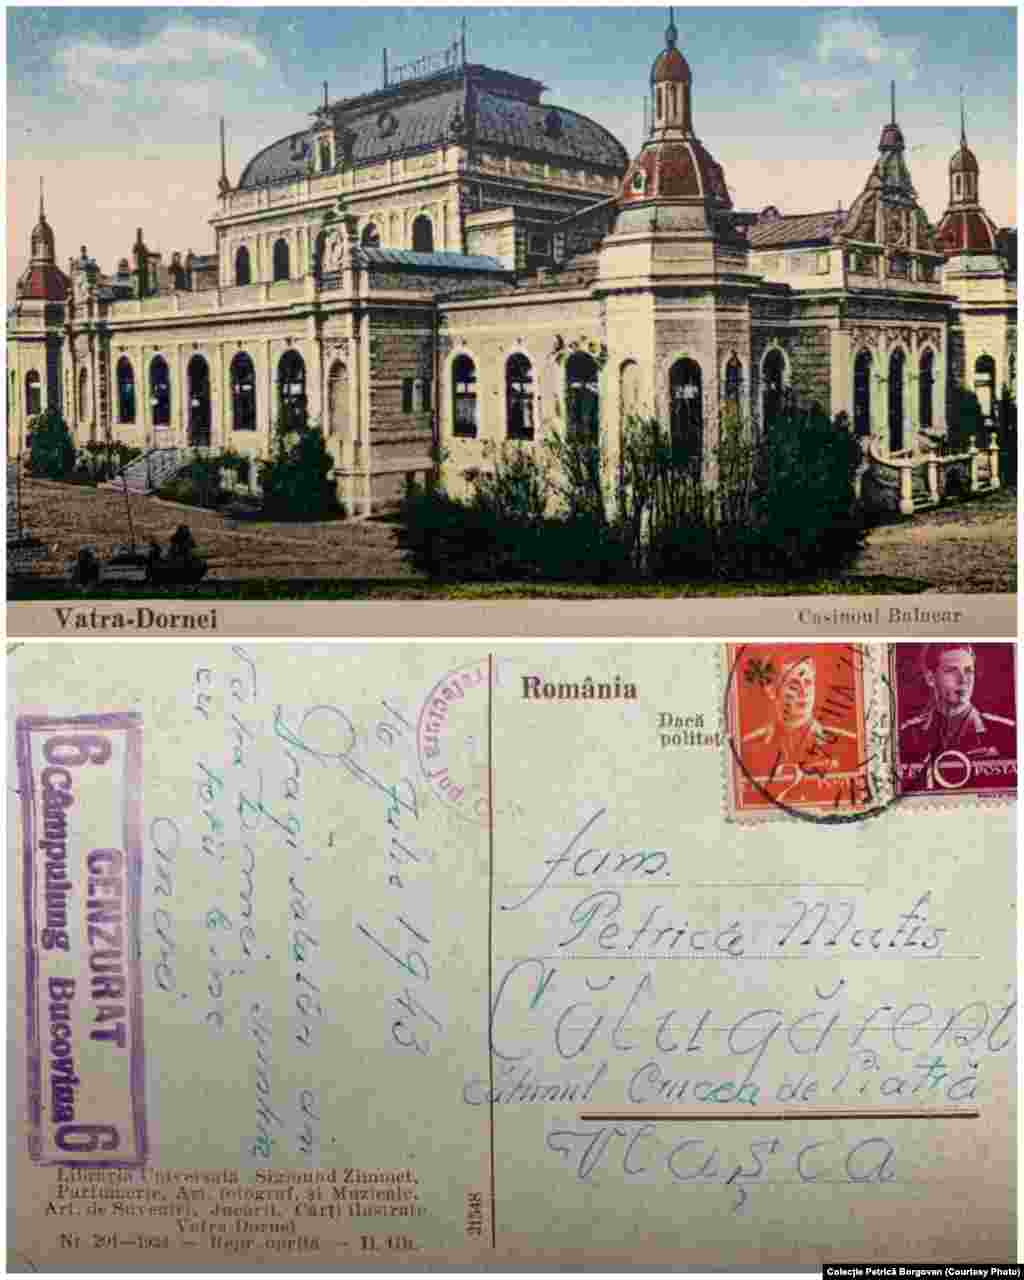 Carte poștală trimisă în 1943, la Călugăreni, cătunul Crucea de Piatră. &bdquo;16 iulie 1943. Dragi salutări din Vatra Dornei, suntem cu toții bine. Andrei&rdquo; Ștampilă - Cenzurat / Câmpulung Bucovina&rdquo;